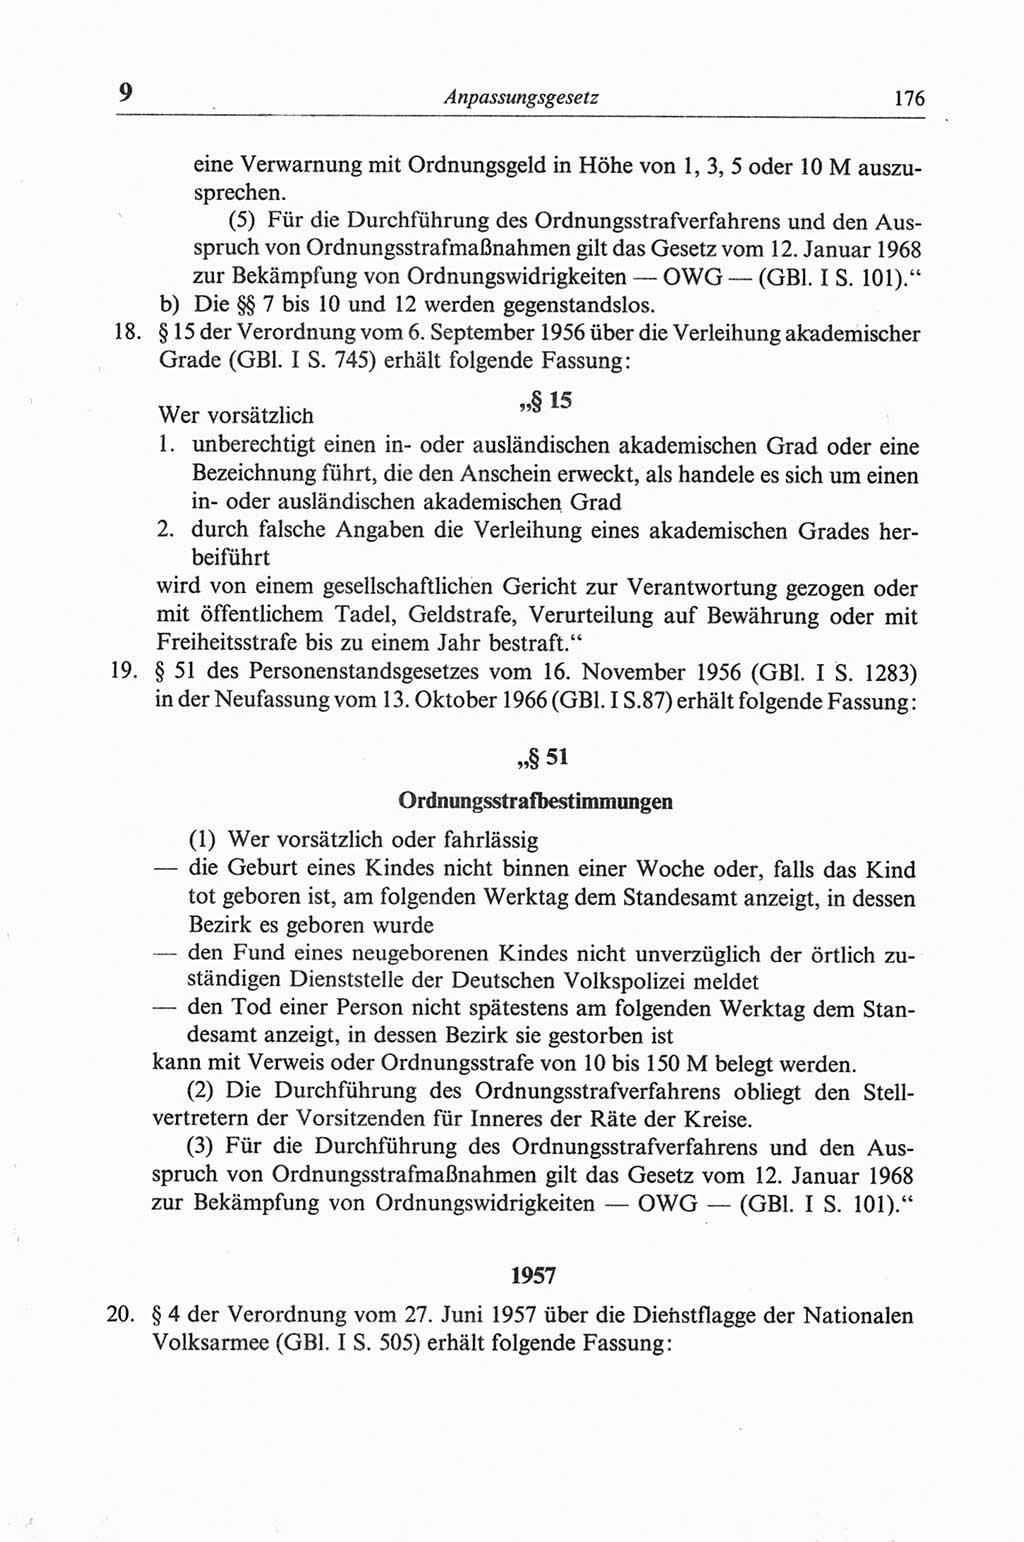 Strafgesetzbuch (StGB) der Deutschen Demokratischen Republik (DDR) und angrenzende Gesetze und Bestimmungen 1968, Seite 176 (StGB Ges. Best. DDR 1968, S. 176)